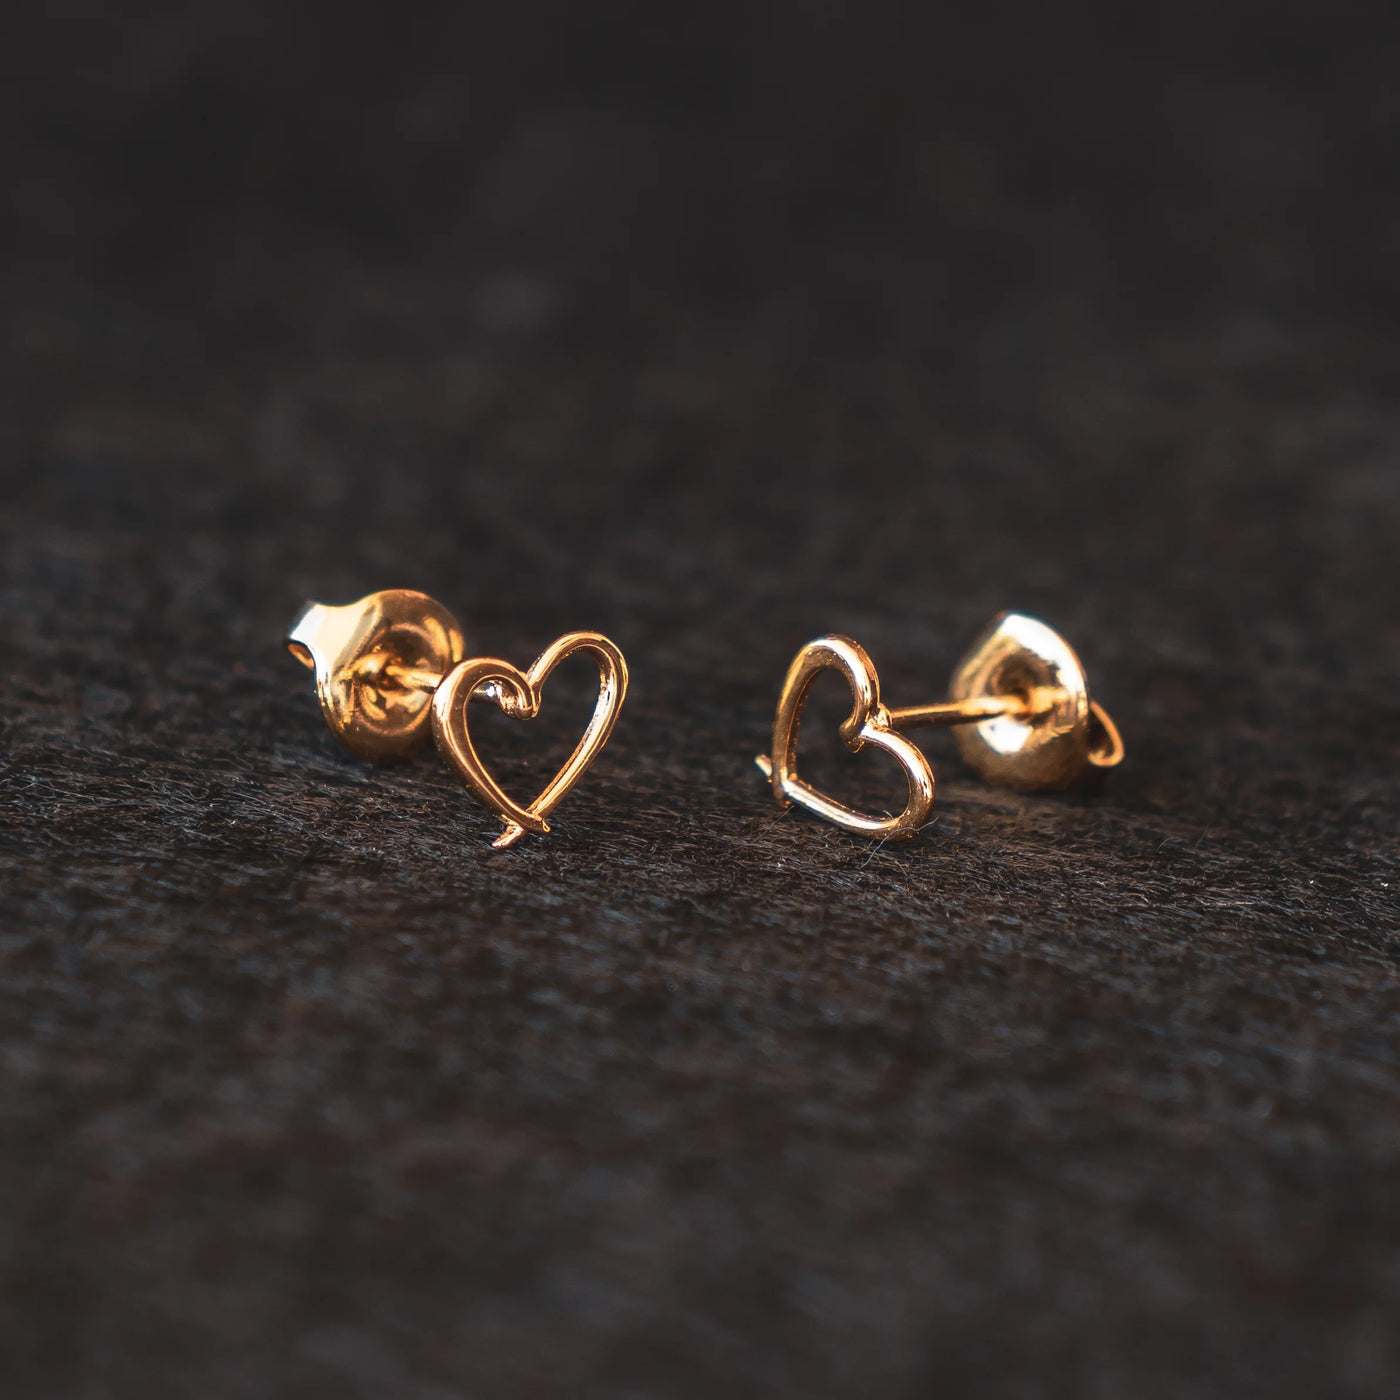 Boucles d'oreilles Orparima en Forme de Coeur, soit 2 tours d'oreilles mis ensemble. Bijoux dorés dans un bain d'or fin 24 Carats t fabriqués par une entreprise française.